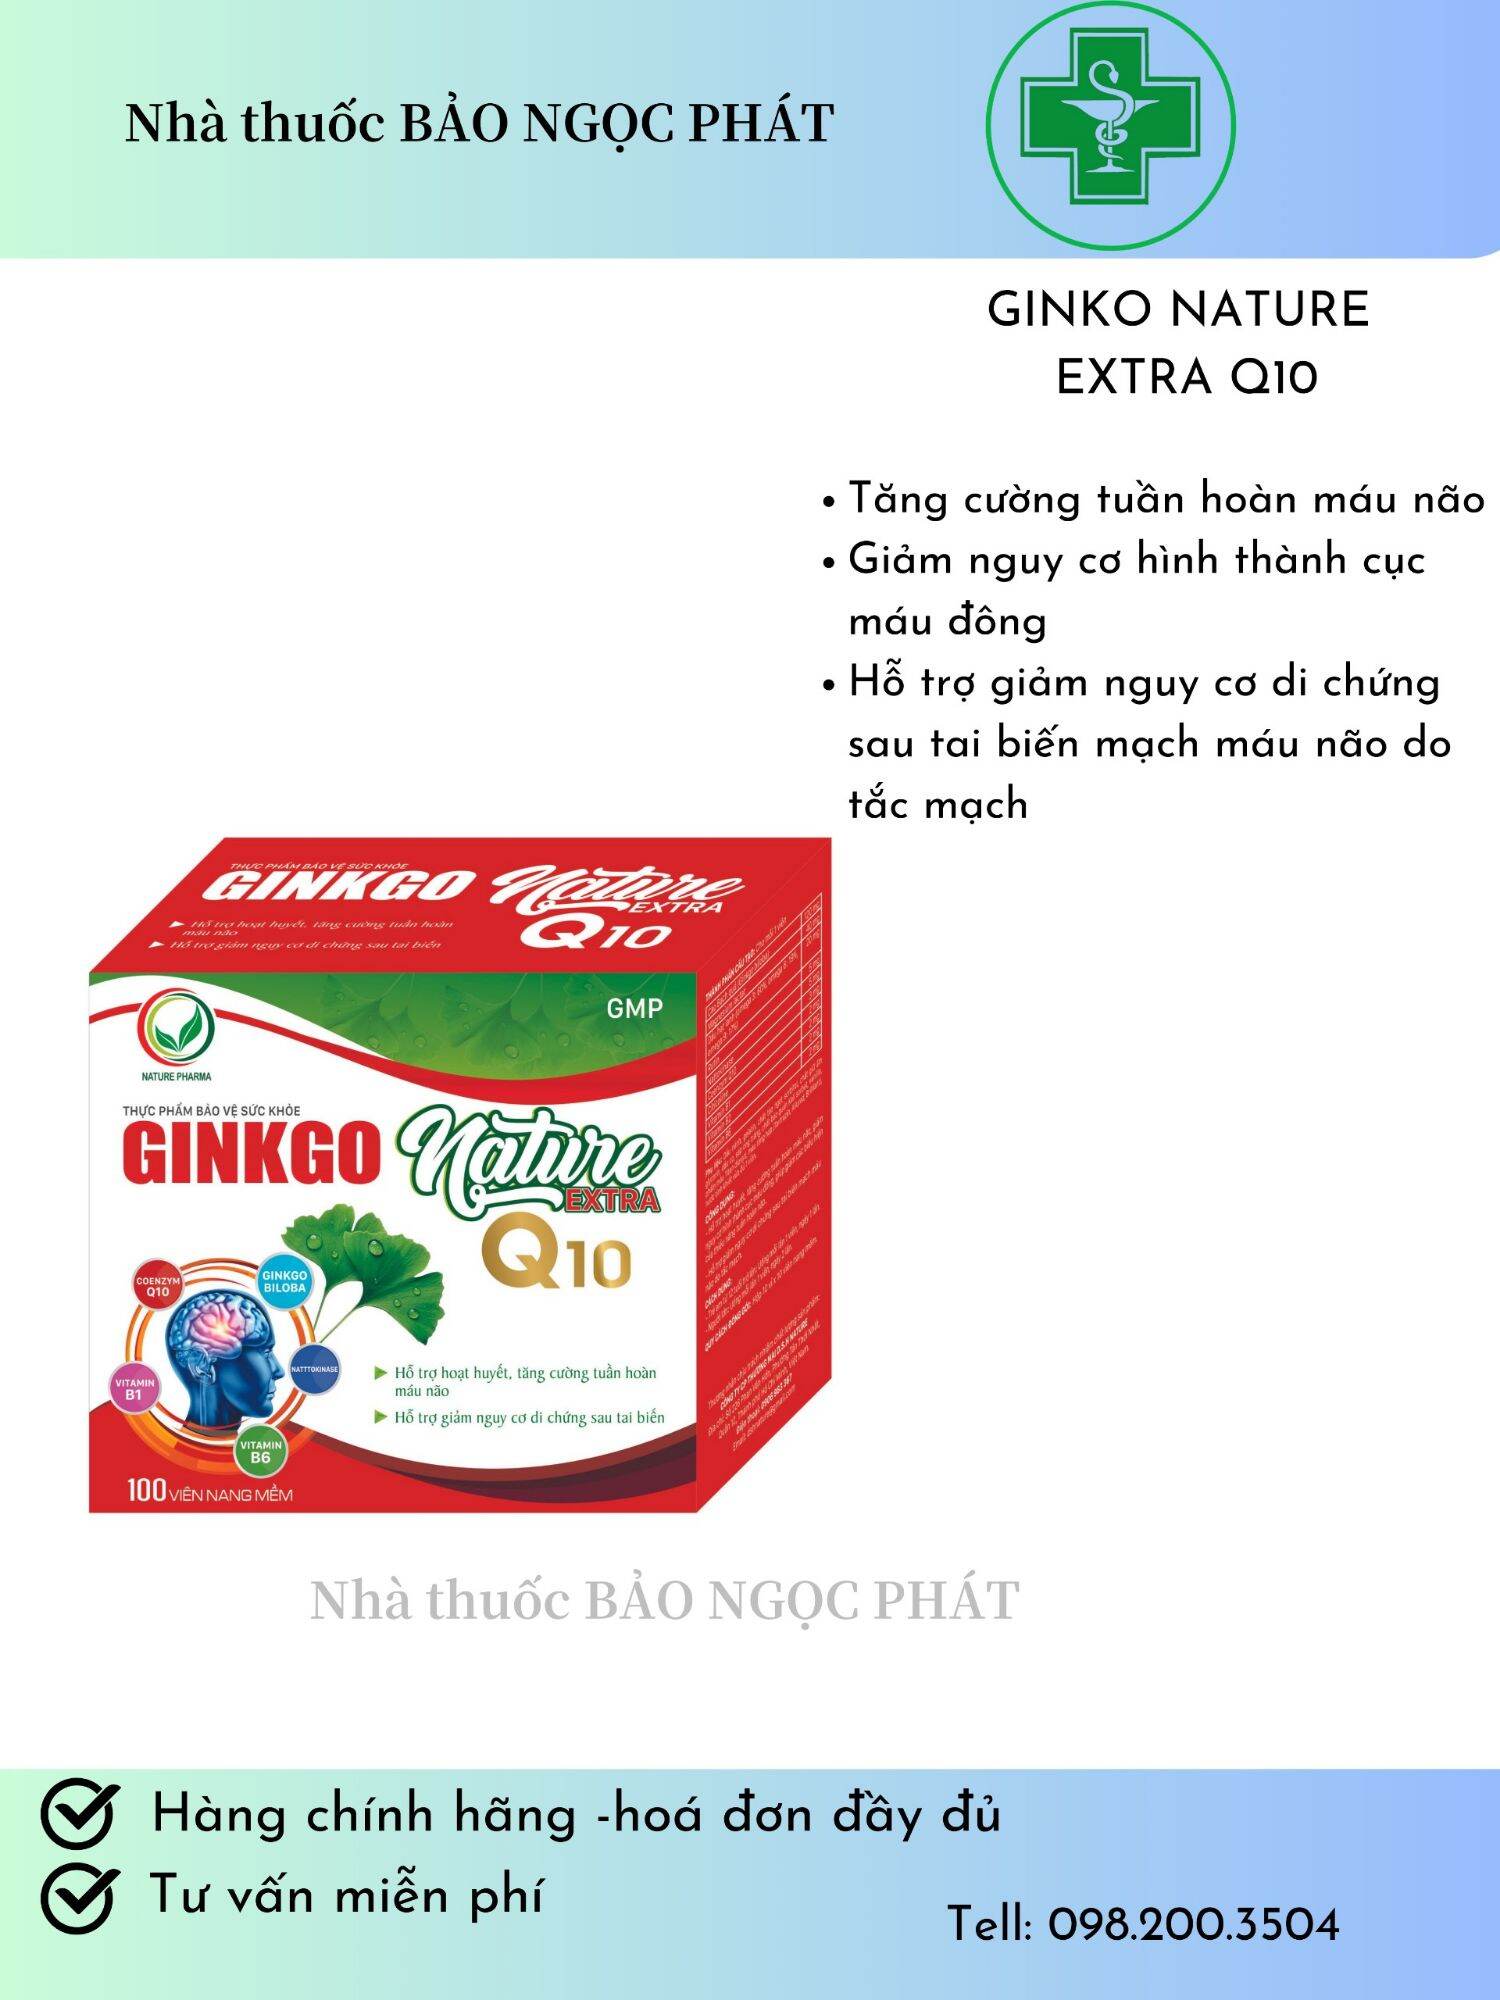 Viên uống Ginkgo nature Q10